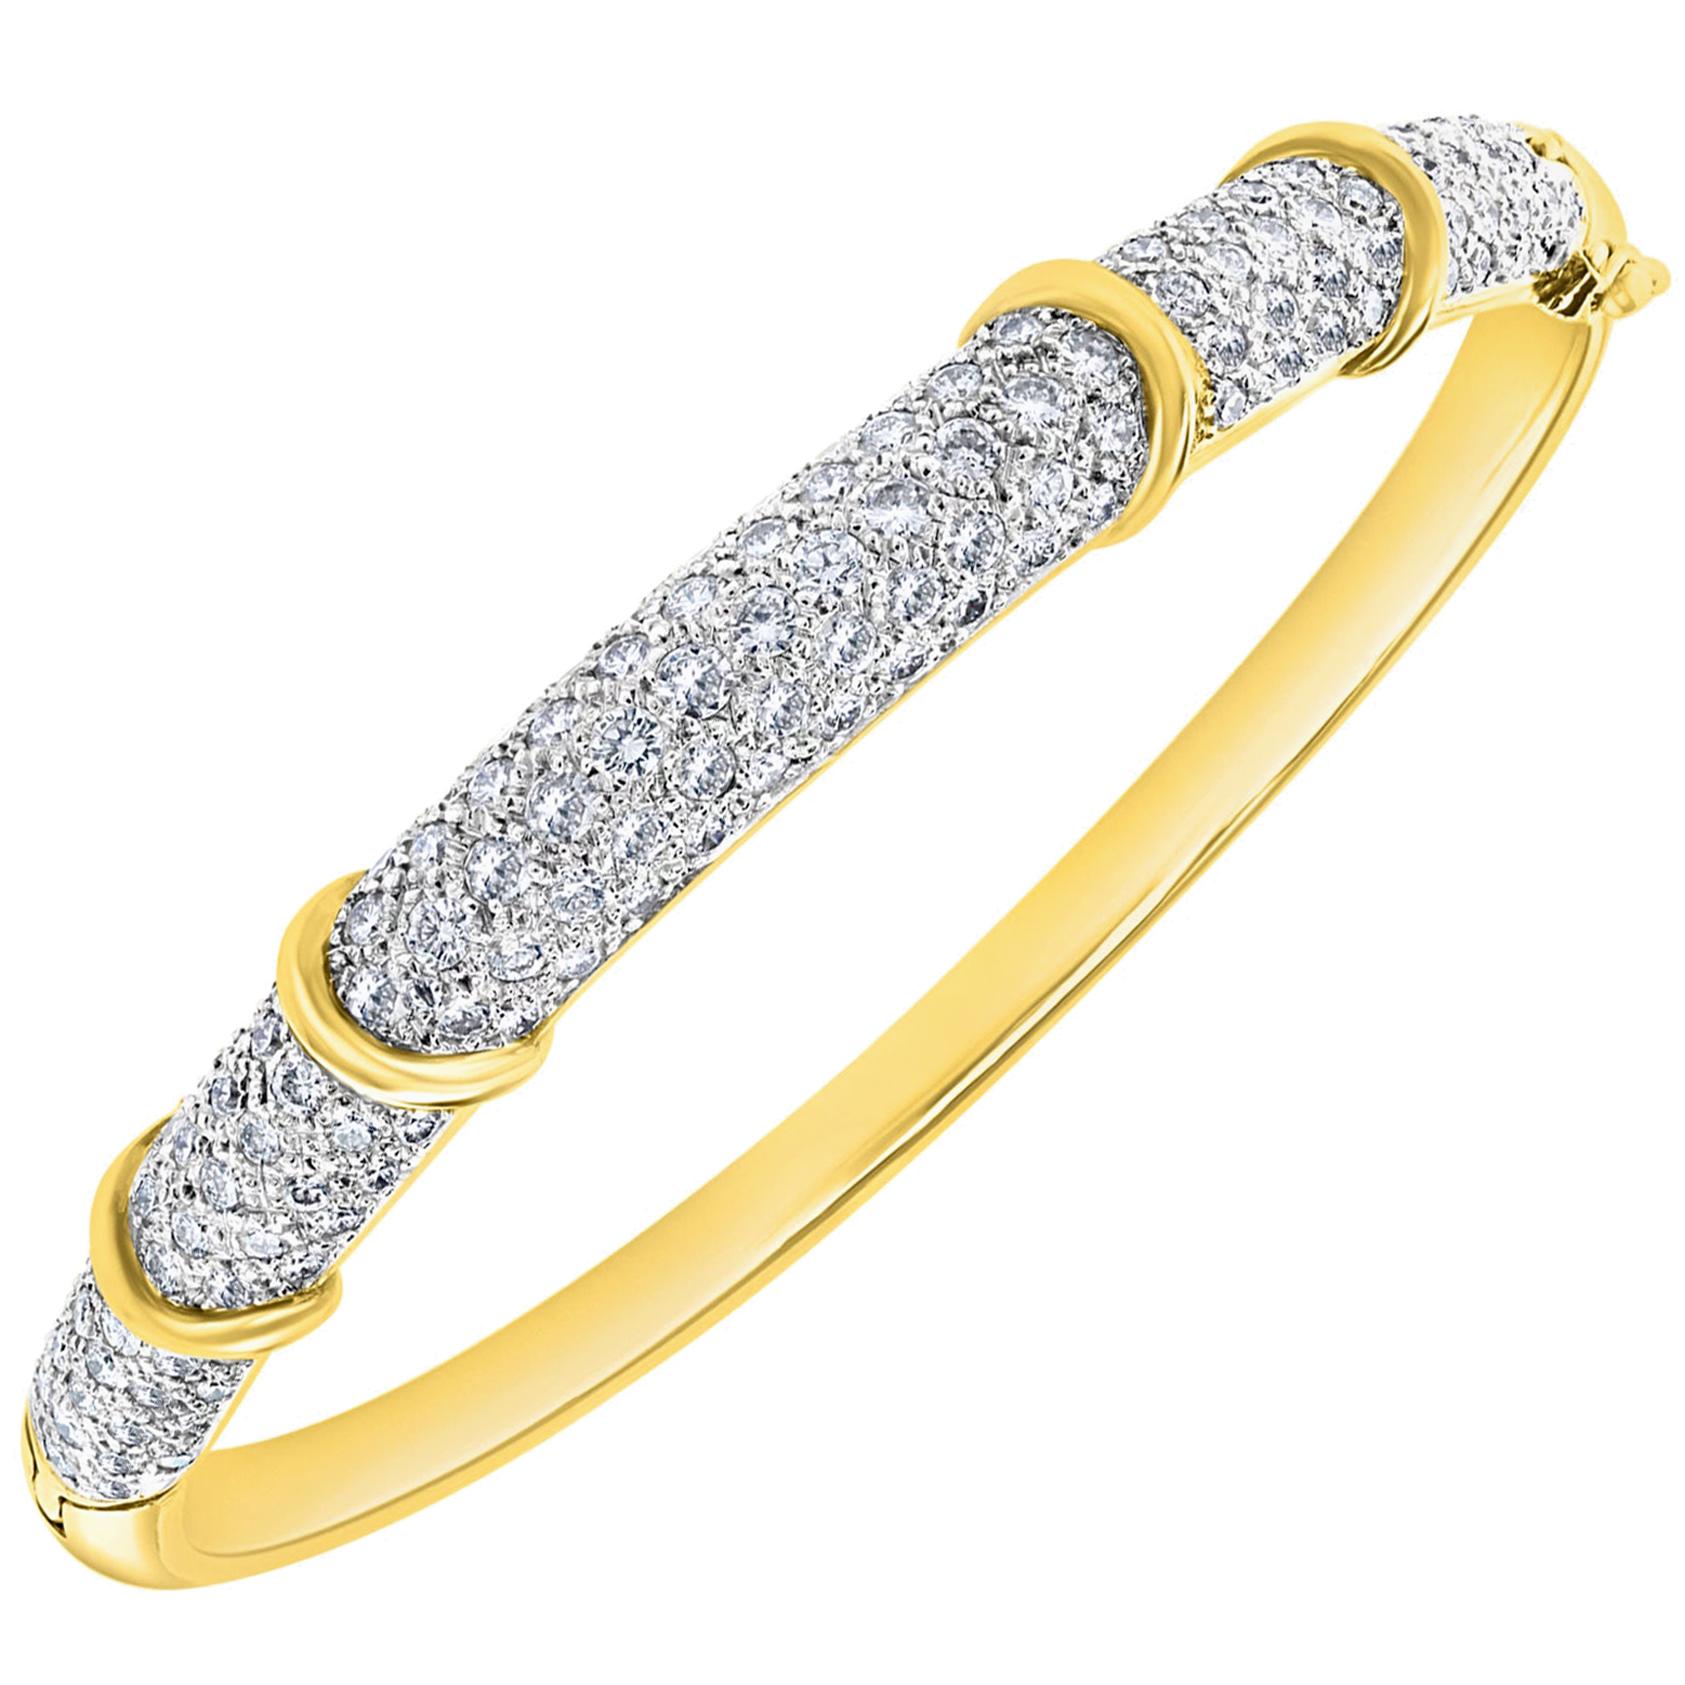 6 Carat Diamond Large Bangle /Bracelet in 18 Karat Yellow Gold 36 Grams